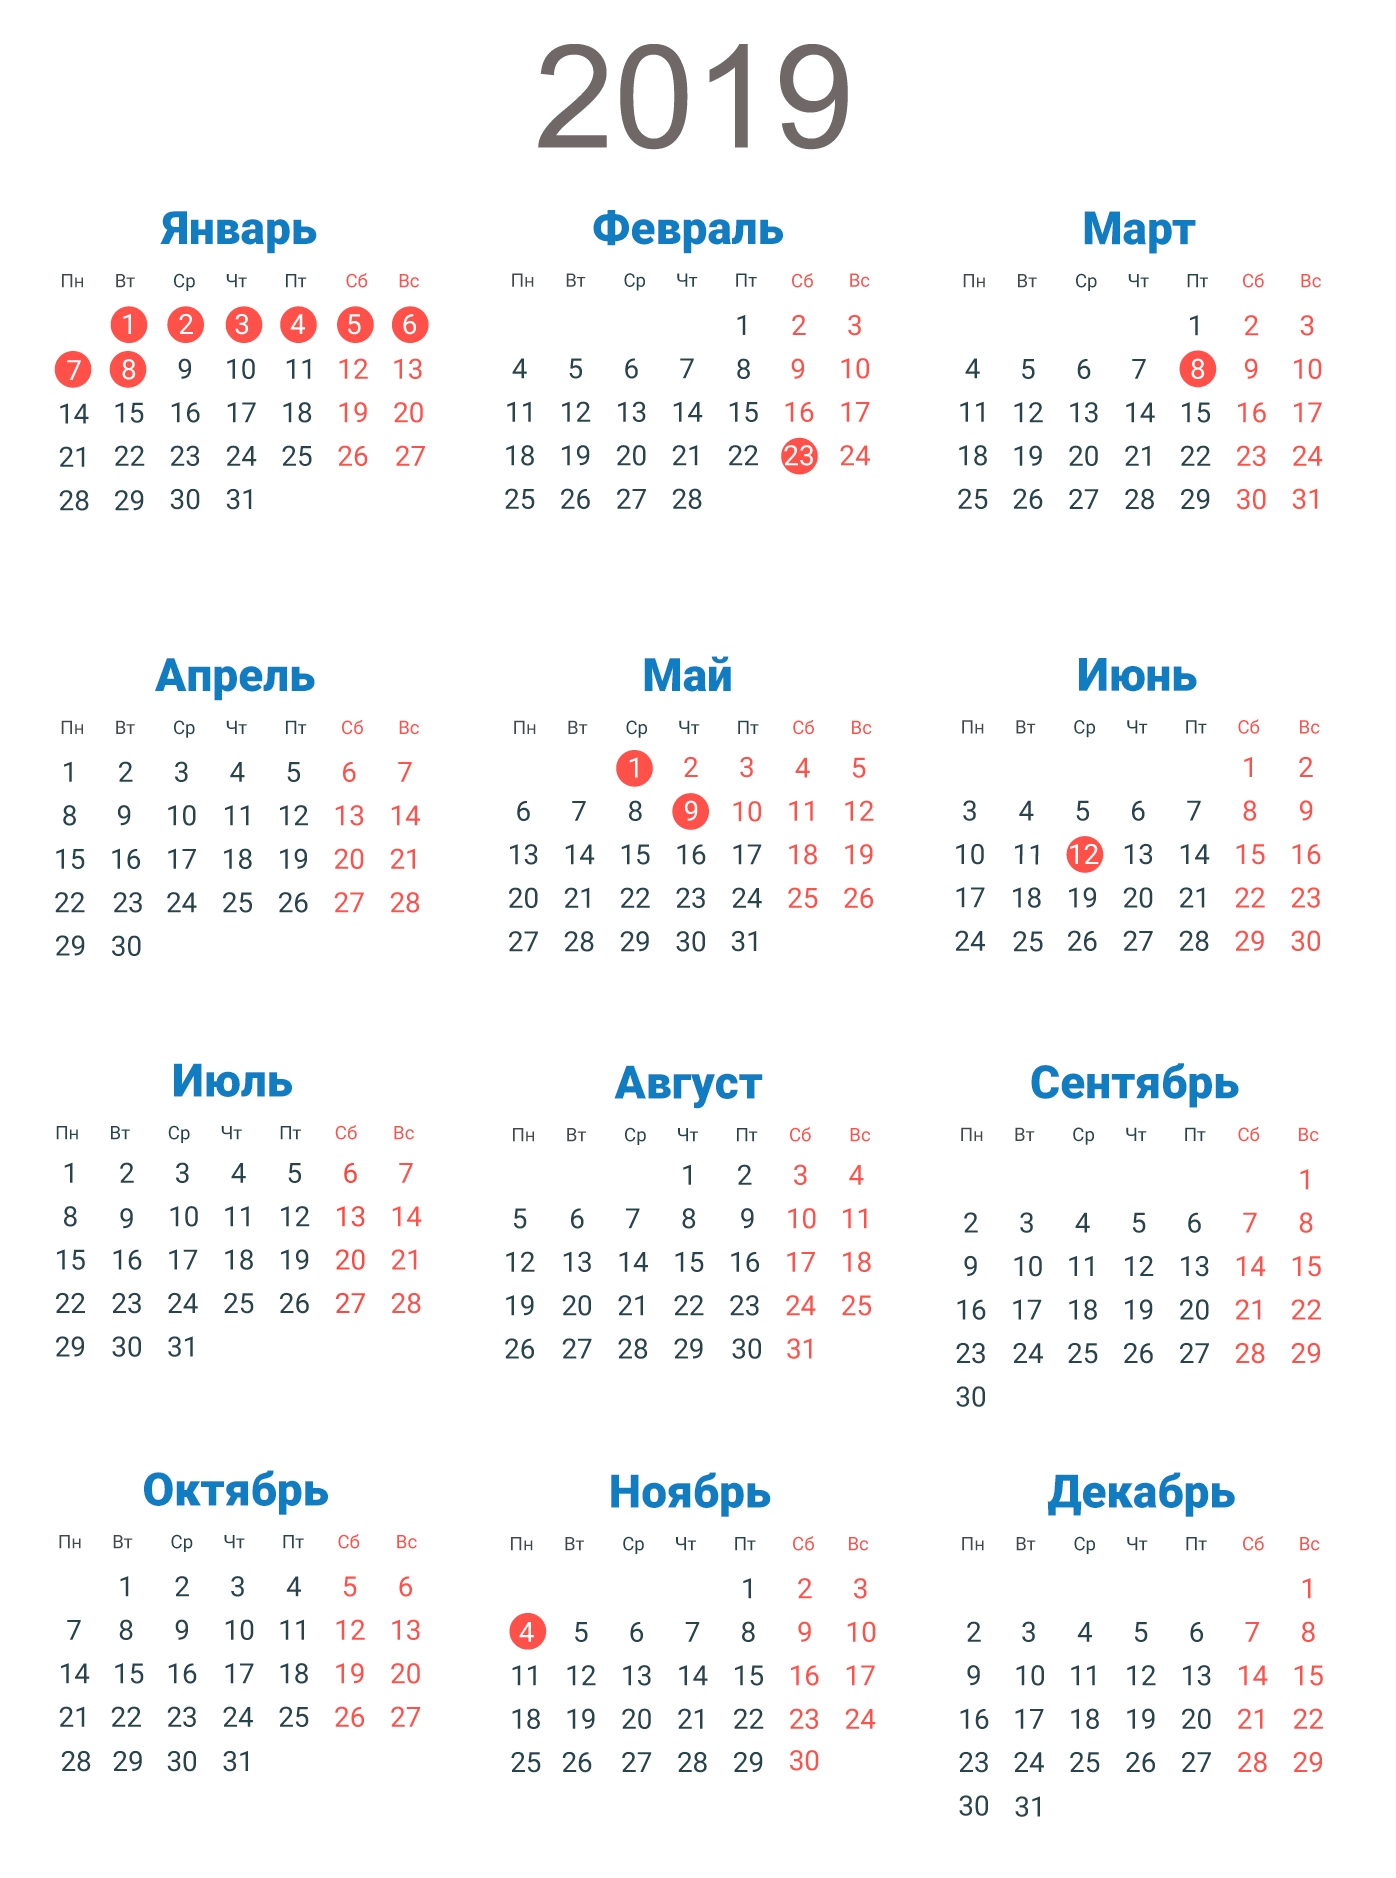 Скачать Календарь На 2019 Год В Форматах: Word, Pdf, Jpg